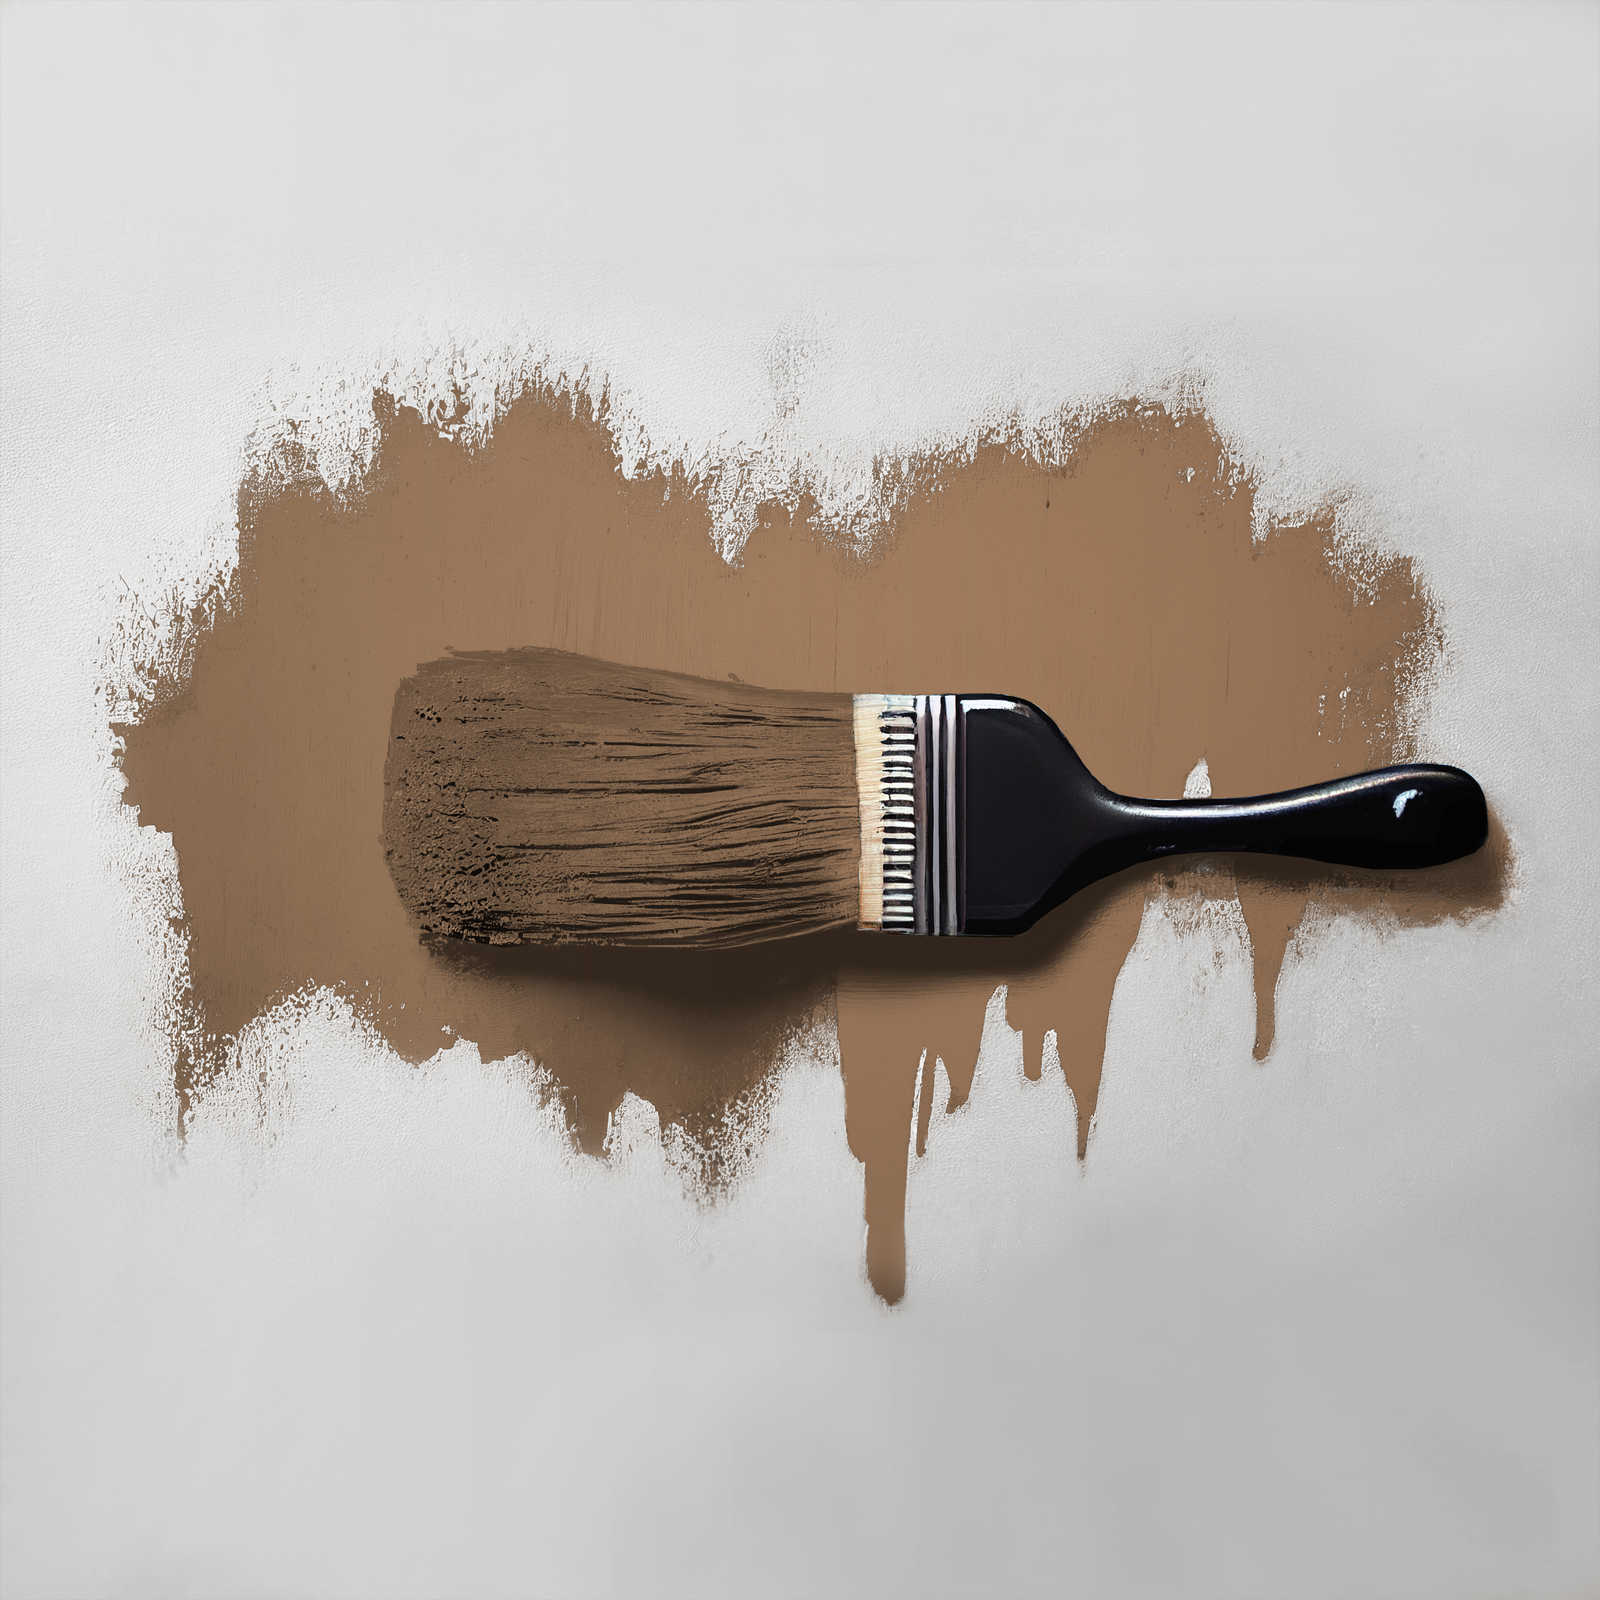             Peinture murale TCK6007 »Awesome Anis« en brun confortable – 5,0 litres
        